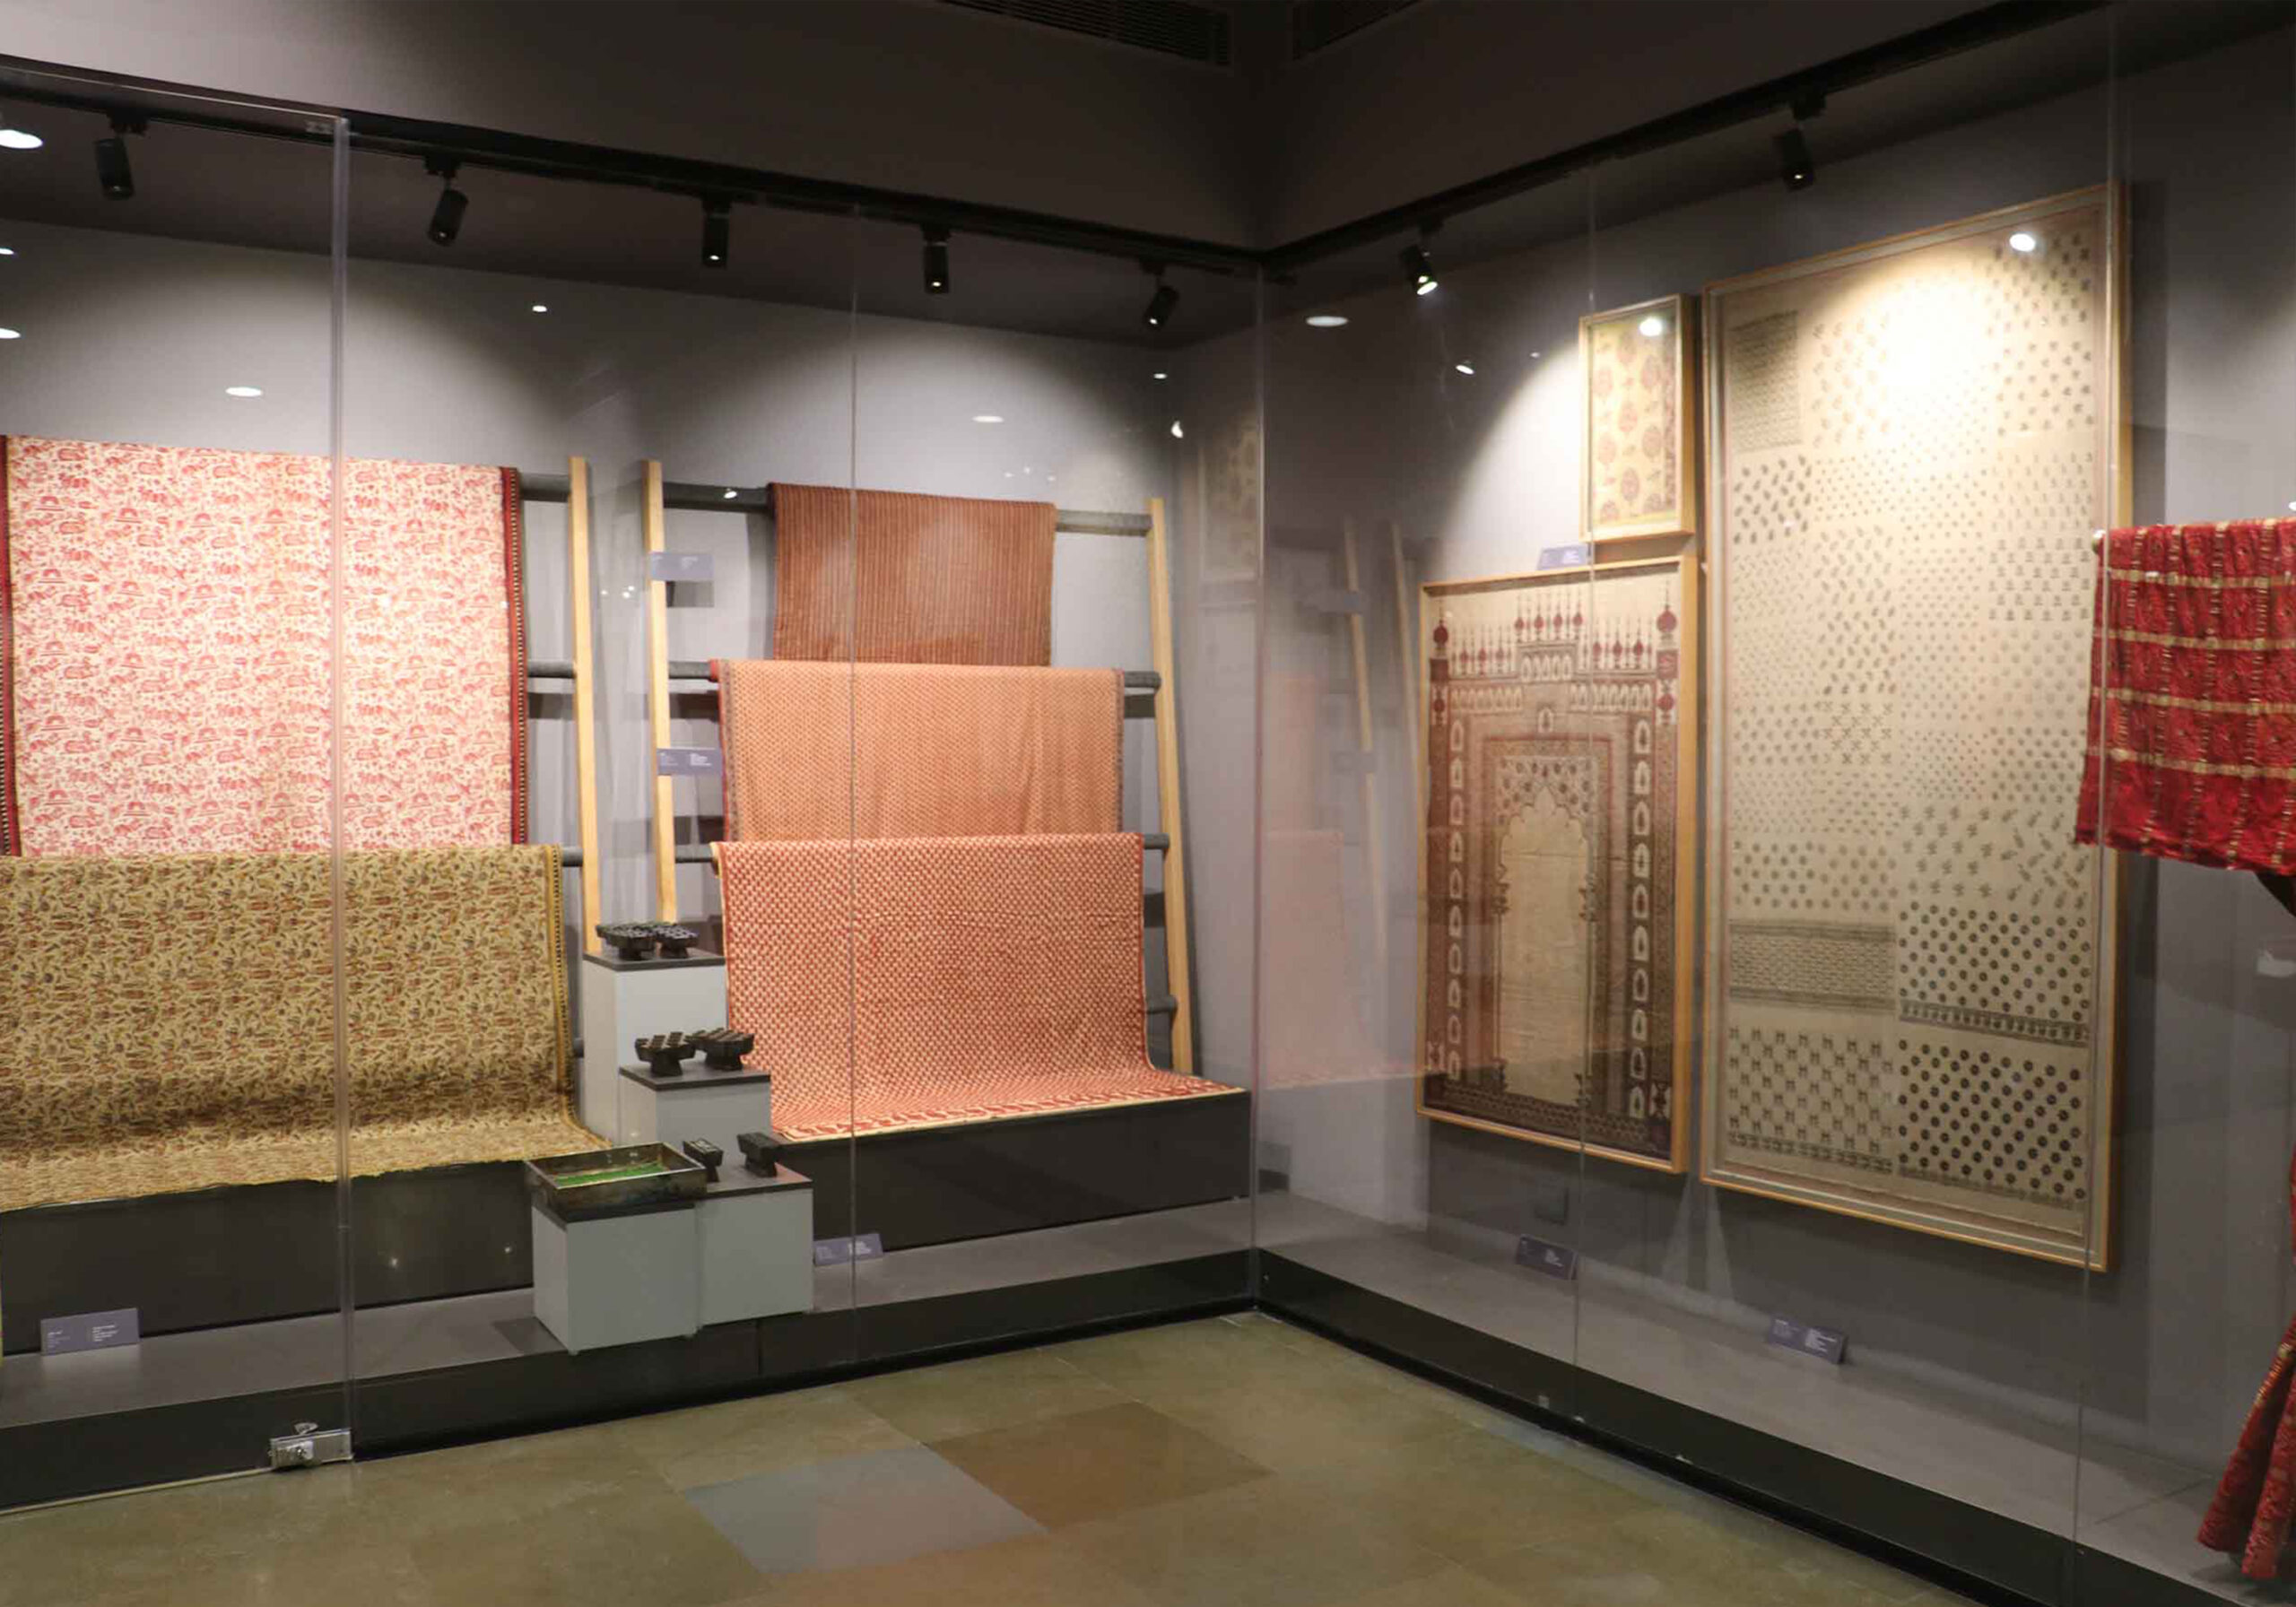 Delhi Textile Museum